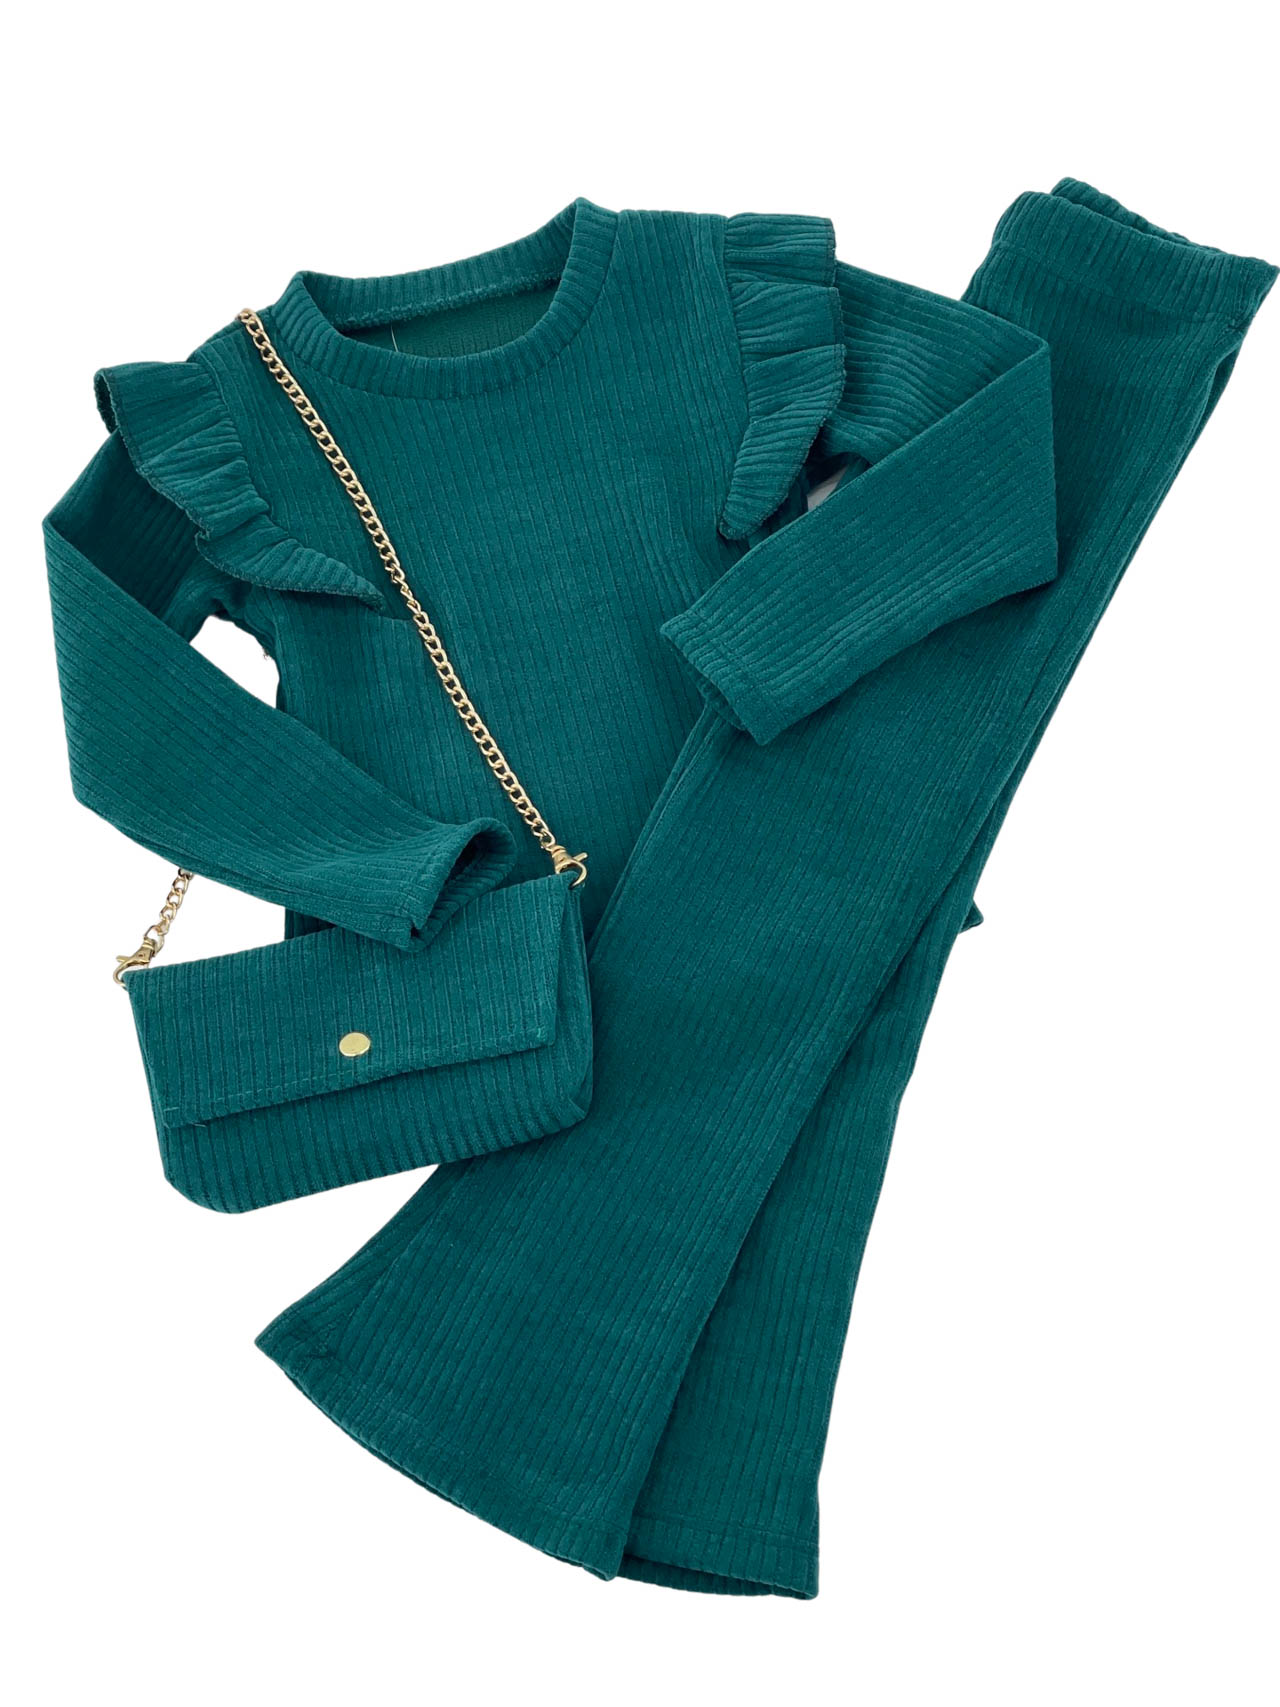 Σετ κορίτσι μπλούζα-παντελόνα καμπάνα κωδ. 1023- τρία τεμάχια- πράσινο